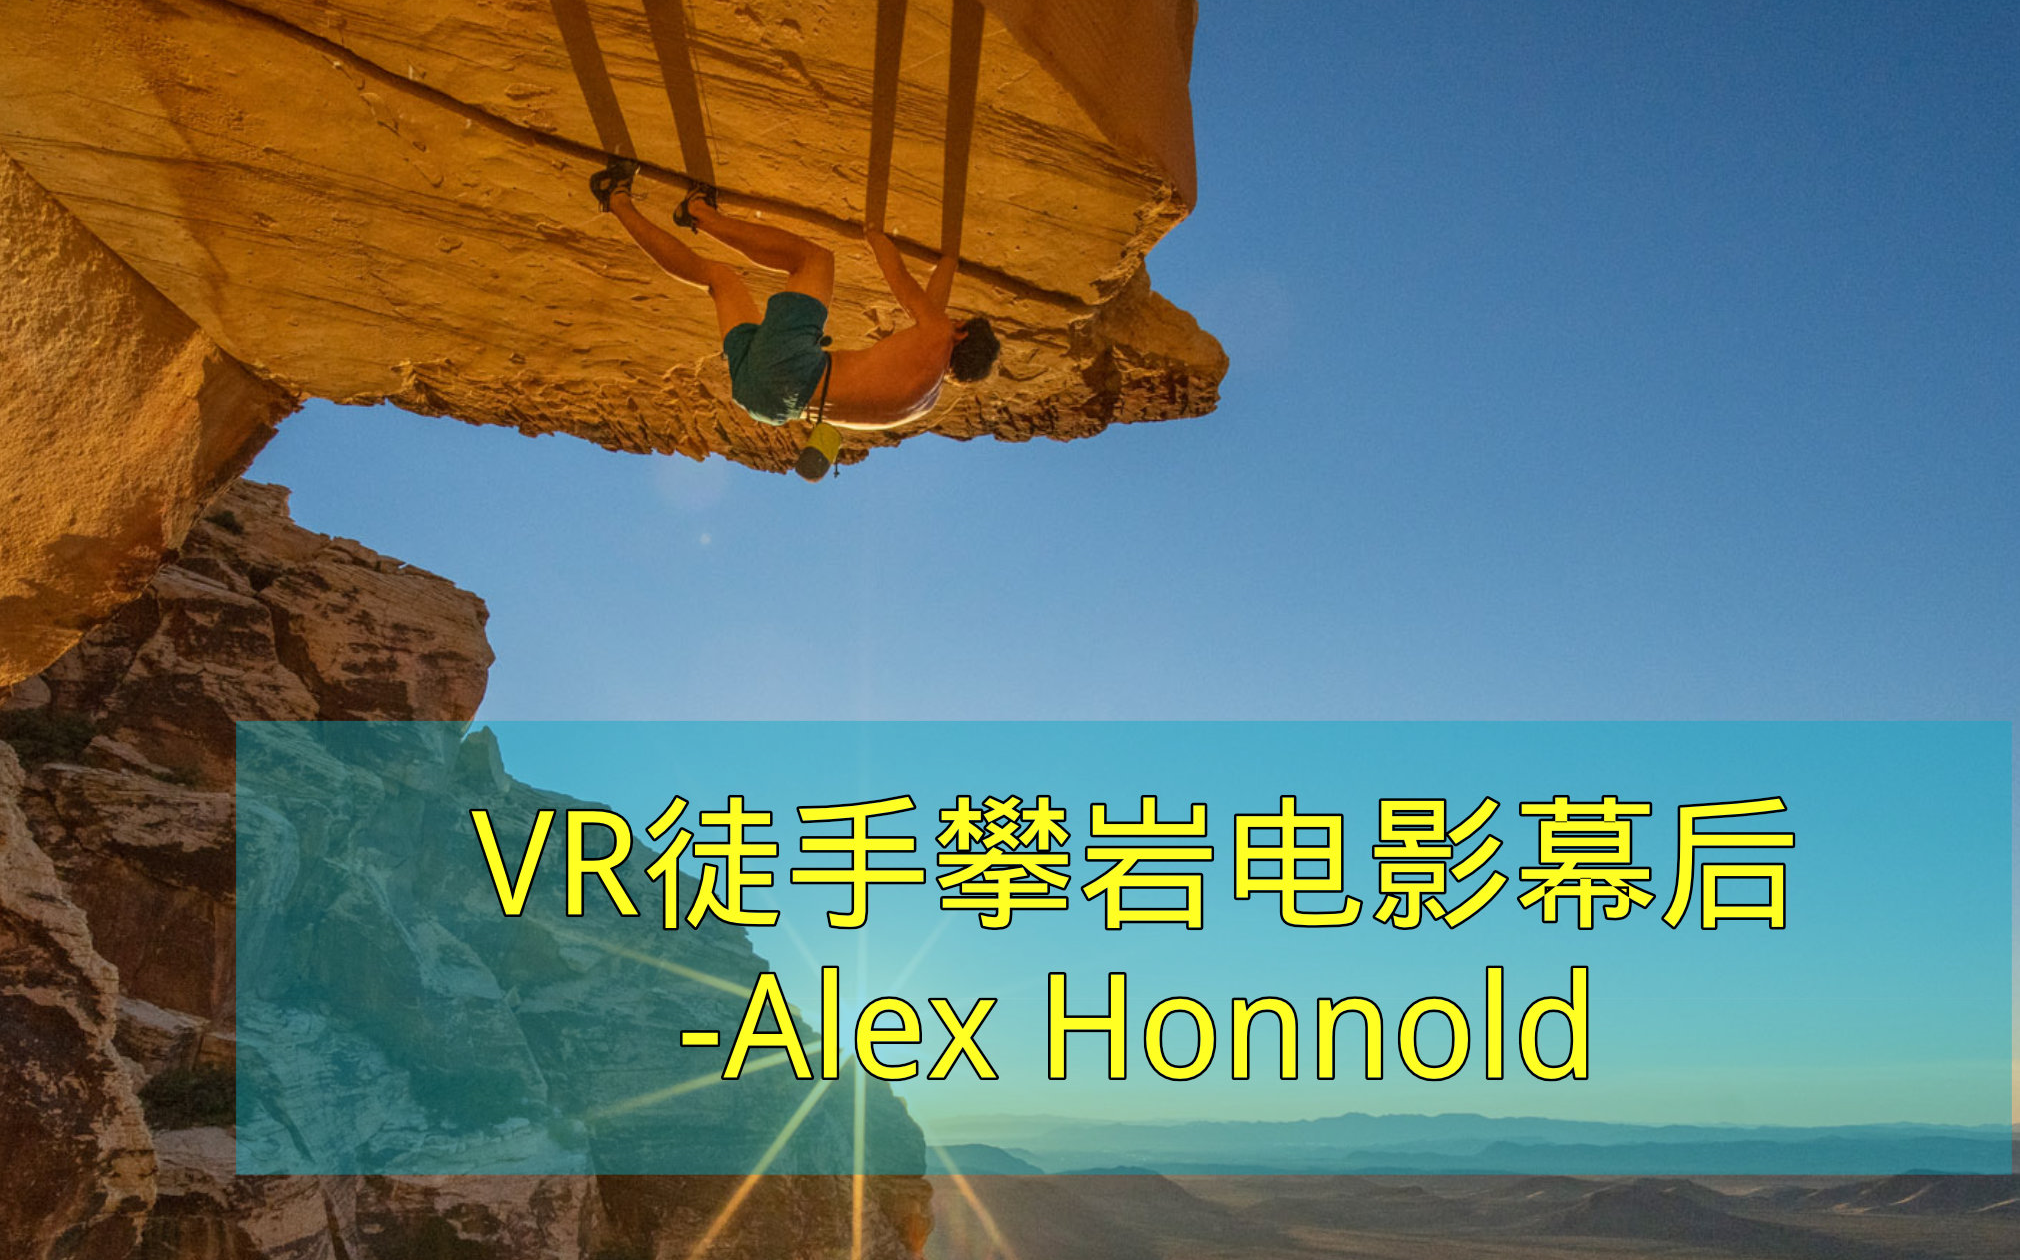 【攀岩传奇】无保护攀岩 Alex Honnold 新电影 The Soloist VR 幕后花絮 红牛官推 自制中文